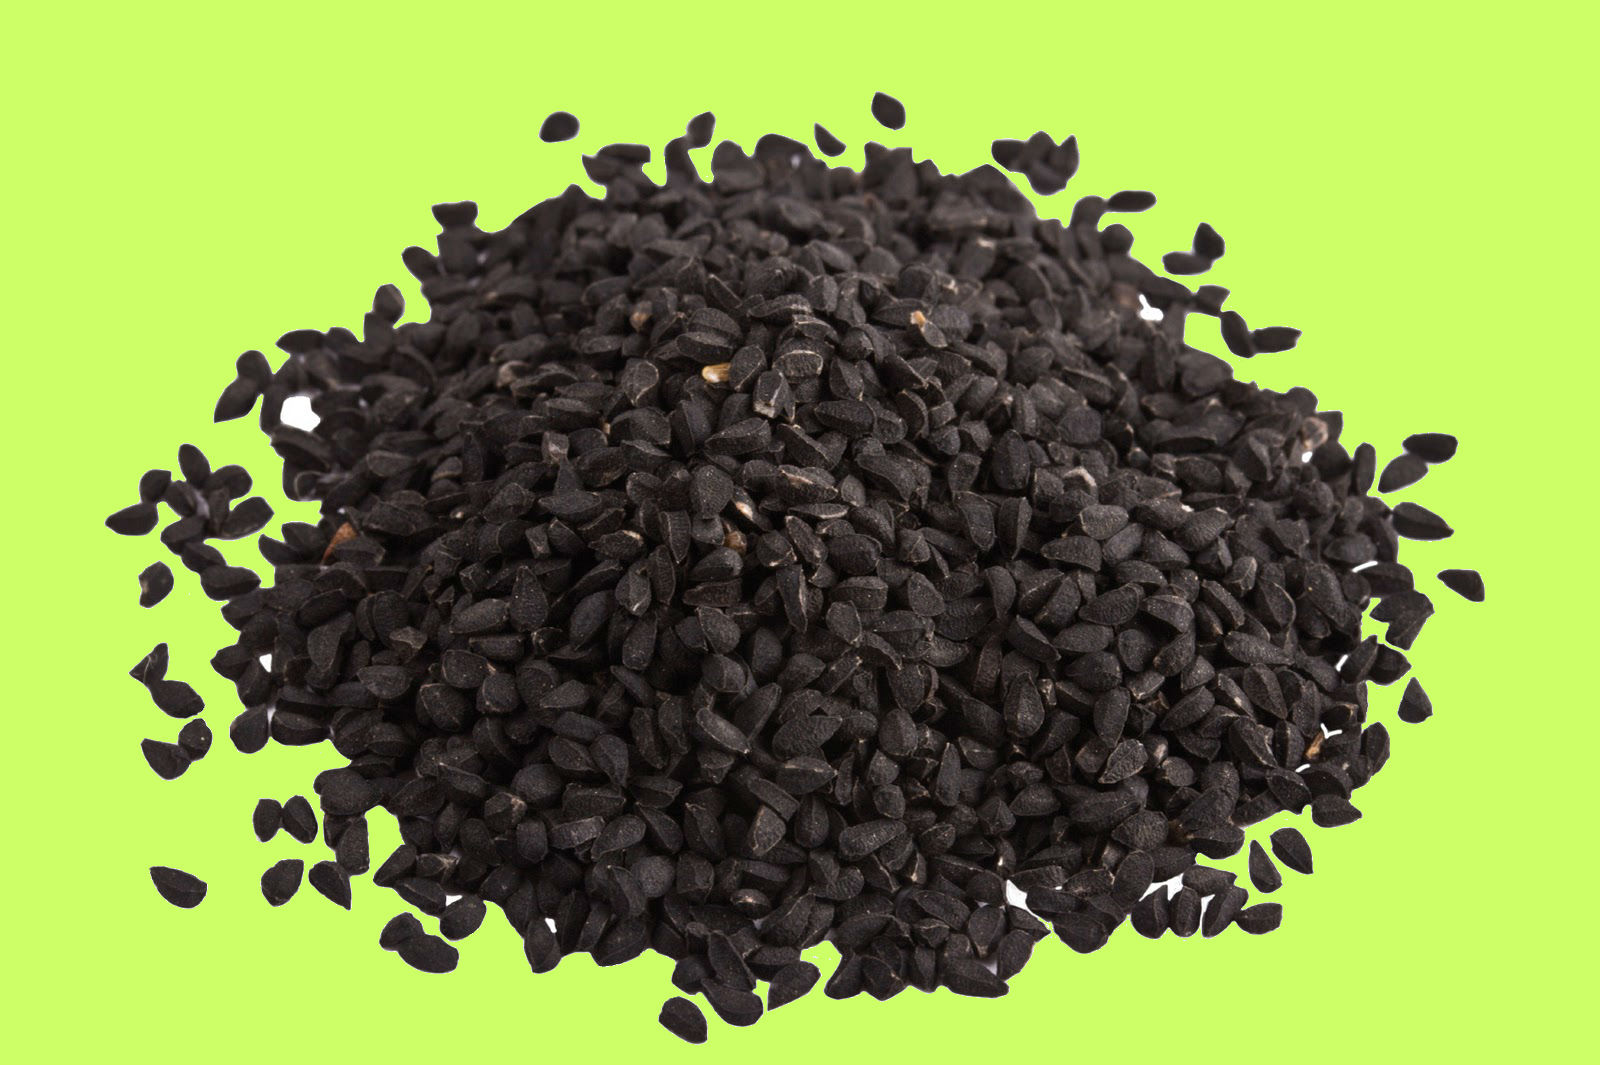 Черный тмин калинджи семена. Семена тмина (Калонджи) черного (Black cumin Seeds) золото Индии 30г. Калинджи Чернушка посевная. Семена растения Nigella Sativa.